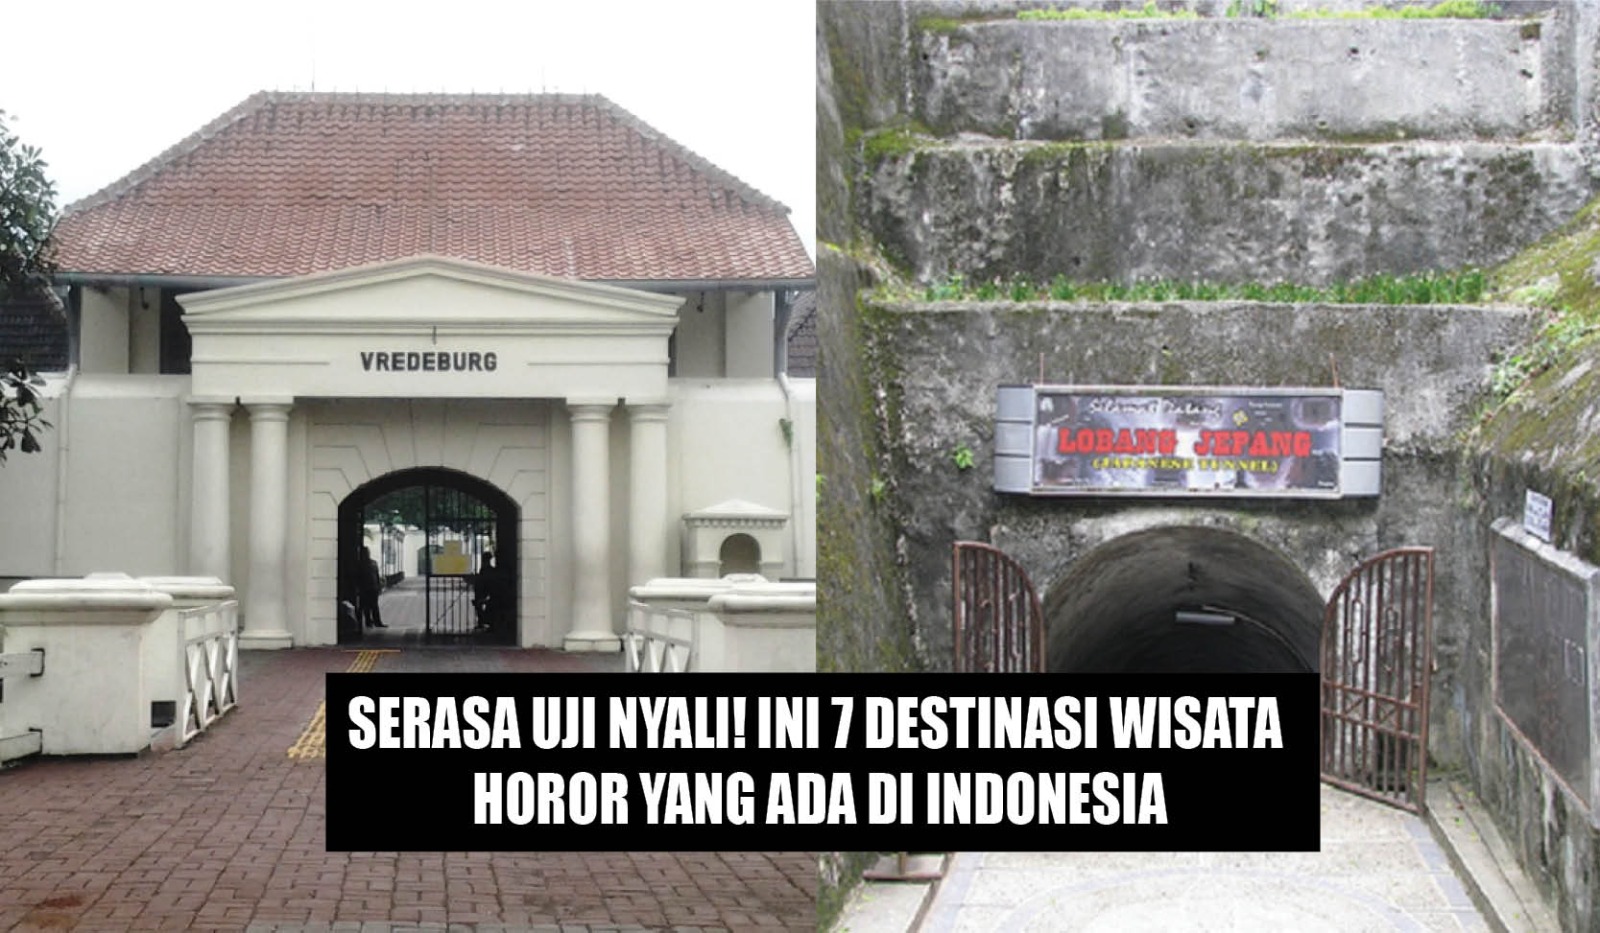 Serasa Uji Nyali! Ini 7 Destinasi Wisata Horor yang Ada di Indonesia, Berani Kesini?